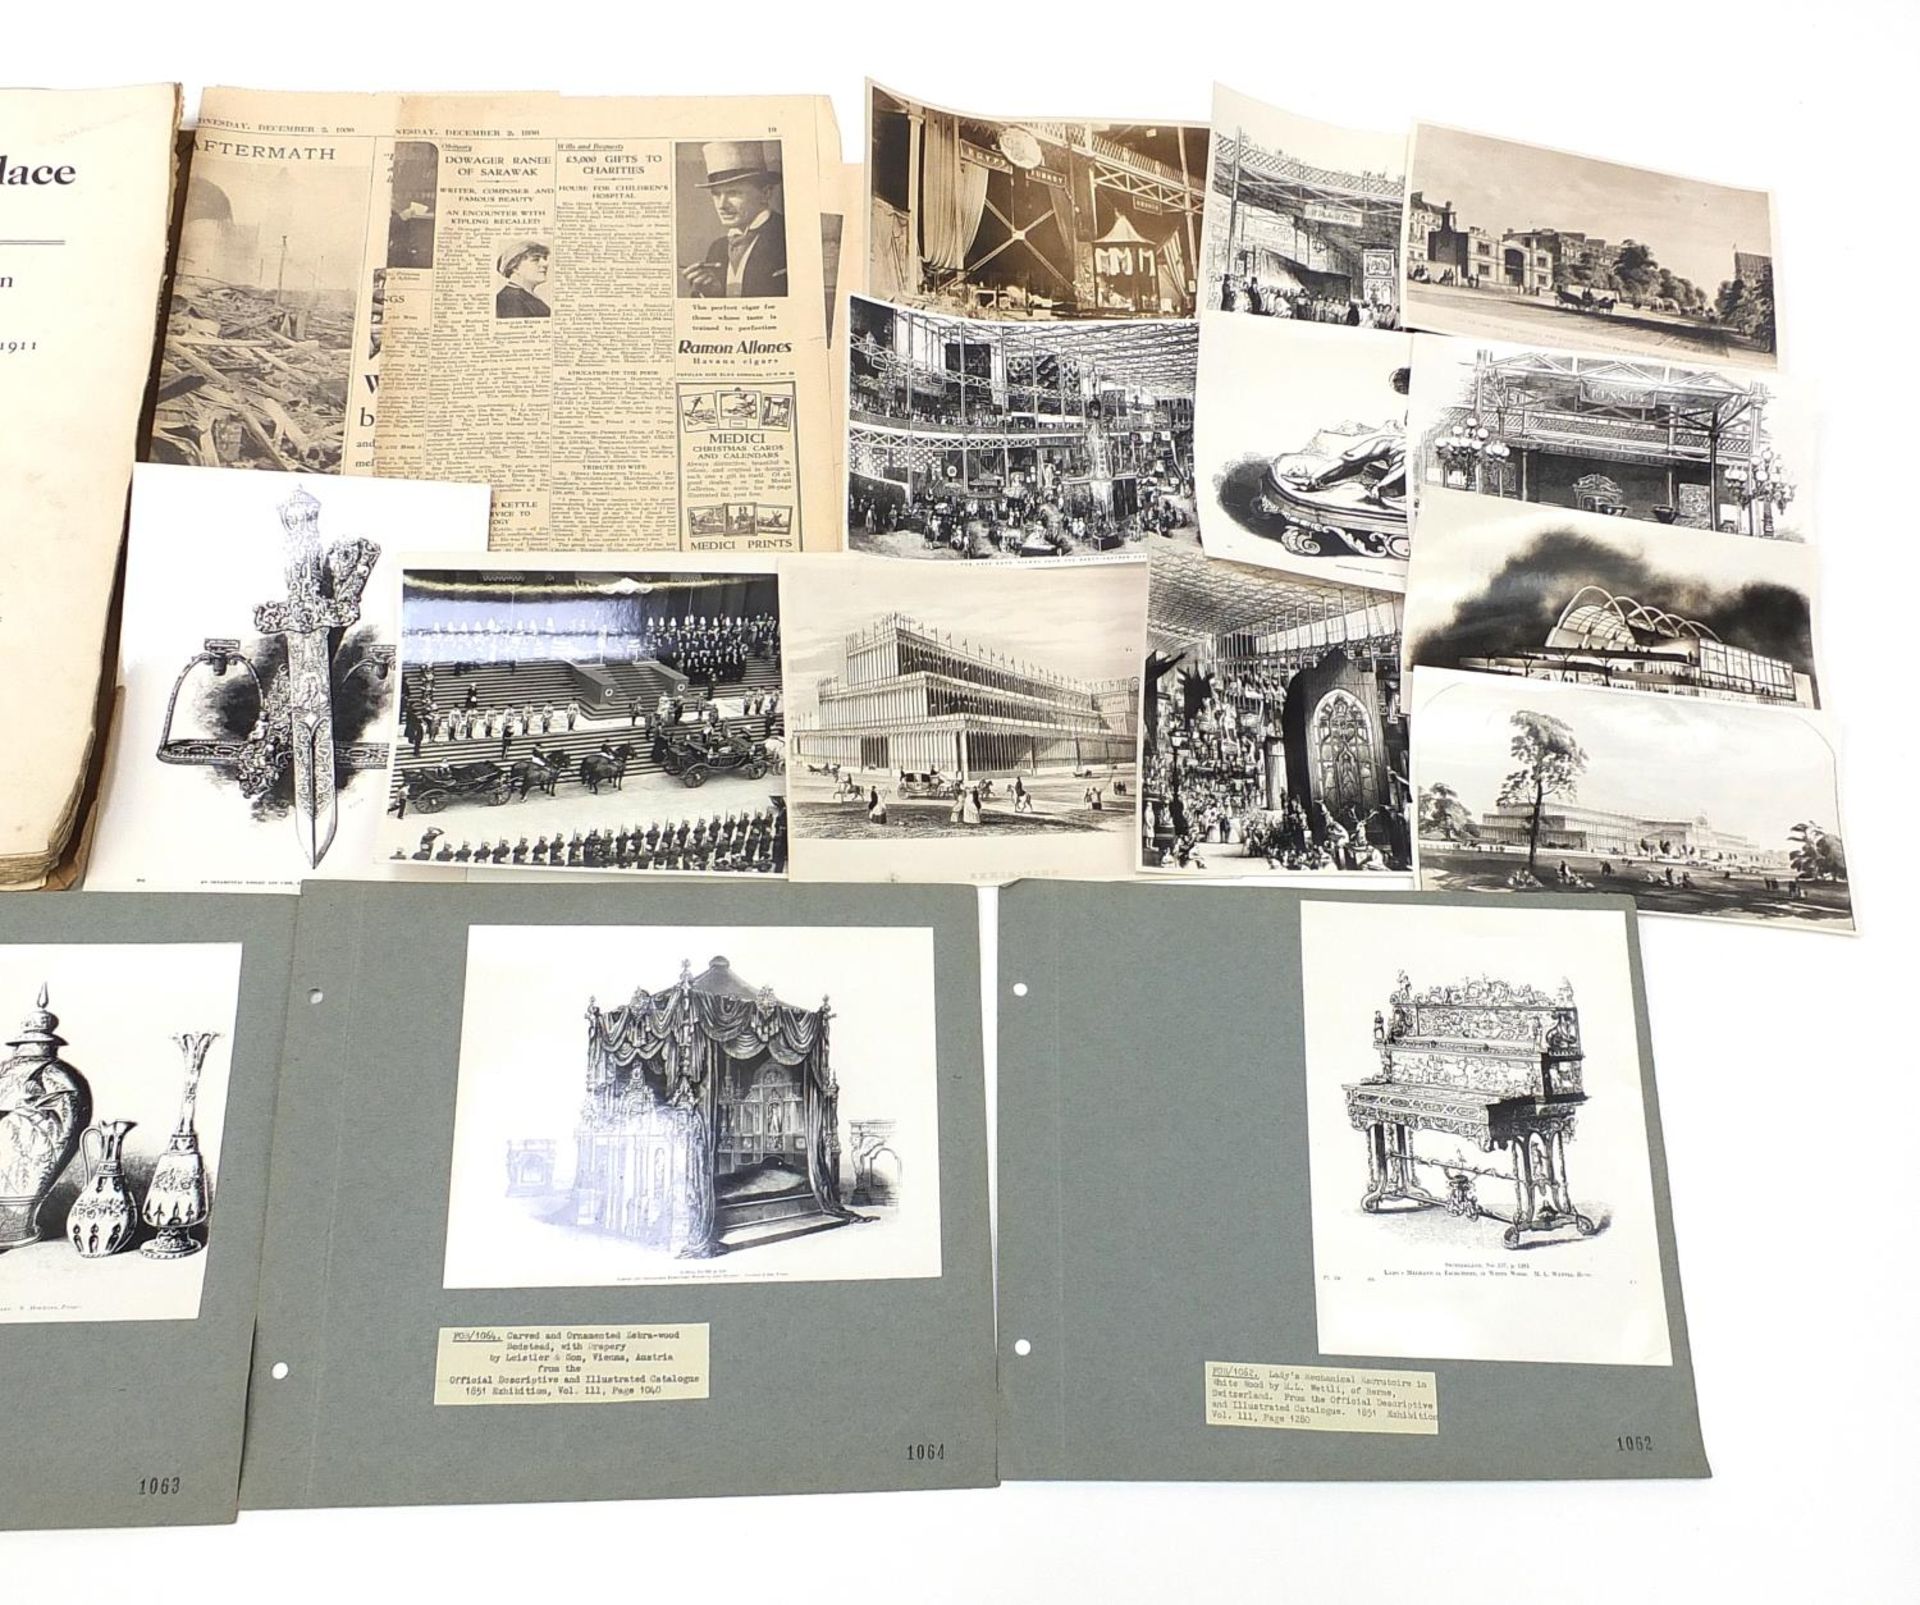 Early 20th century Crystal Palace Exhibition ephemera including Sydenham 1911 Auction Catalogue, - Image 4 of 9